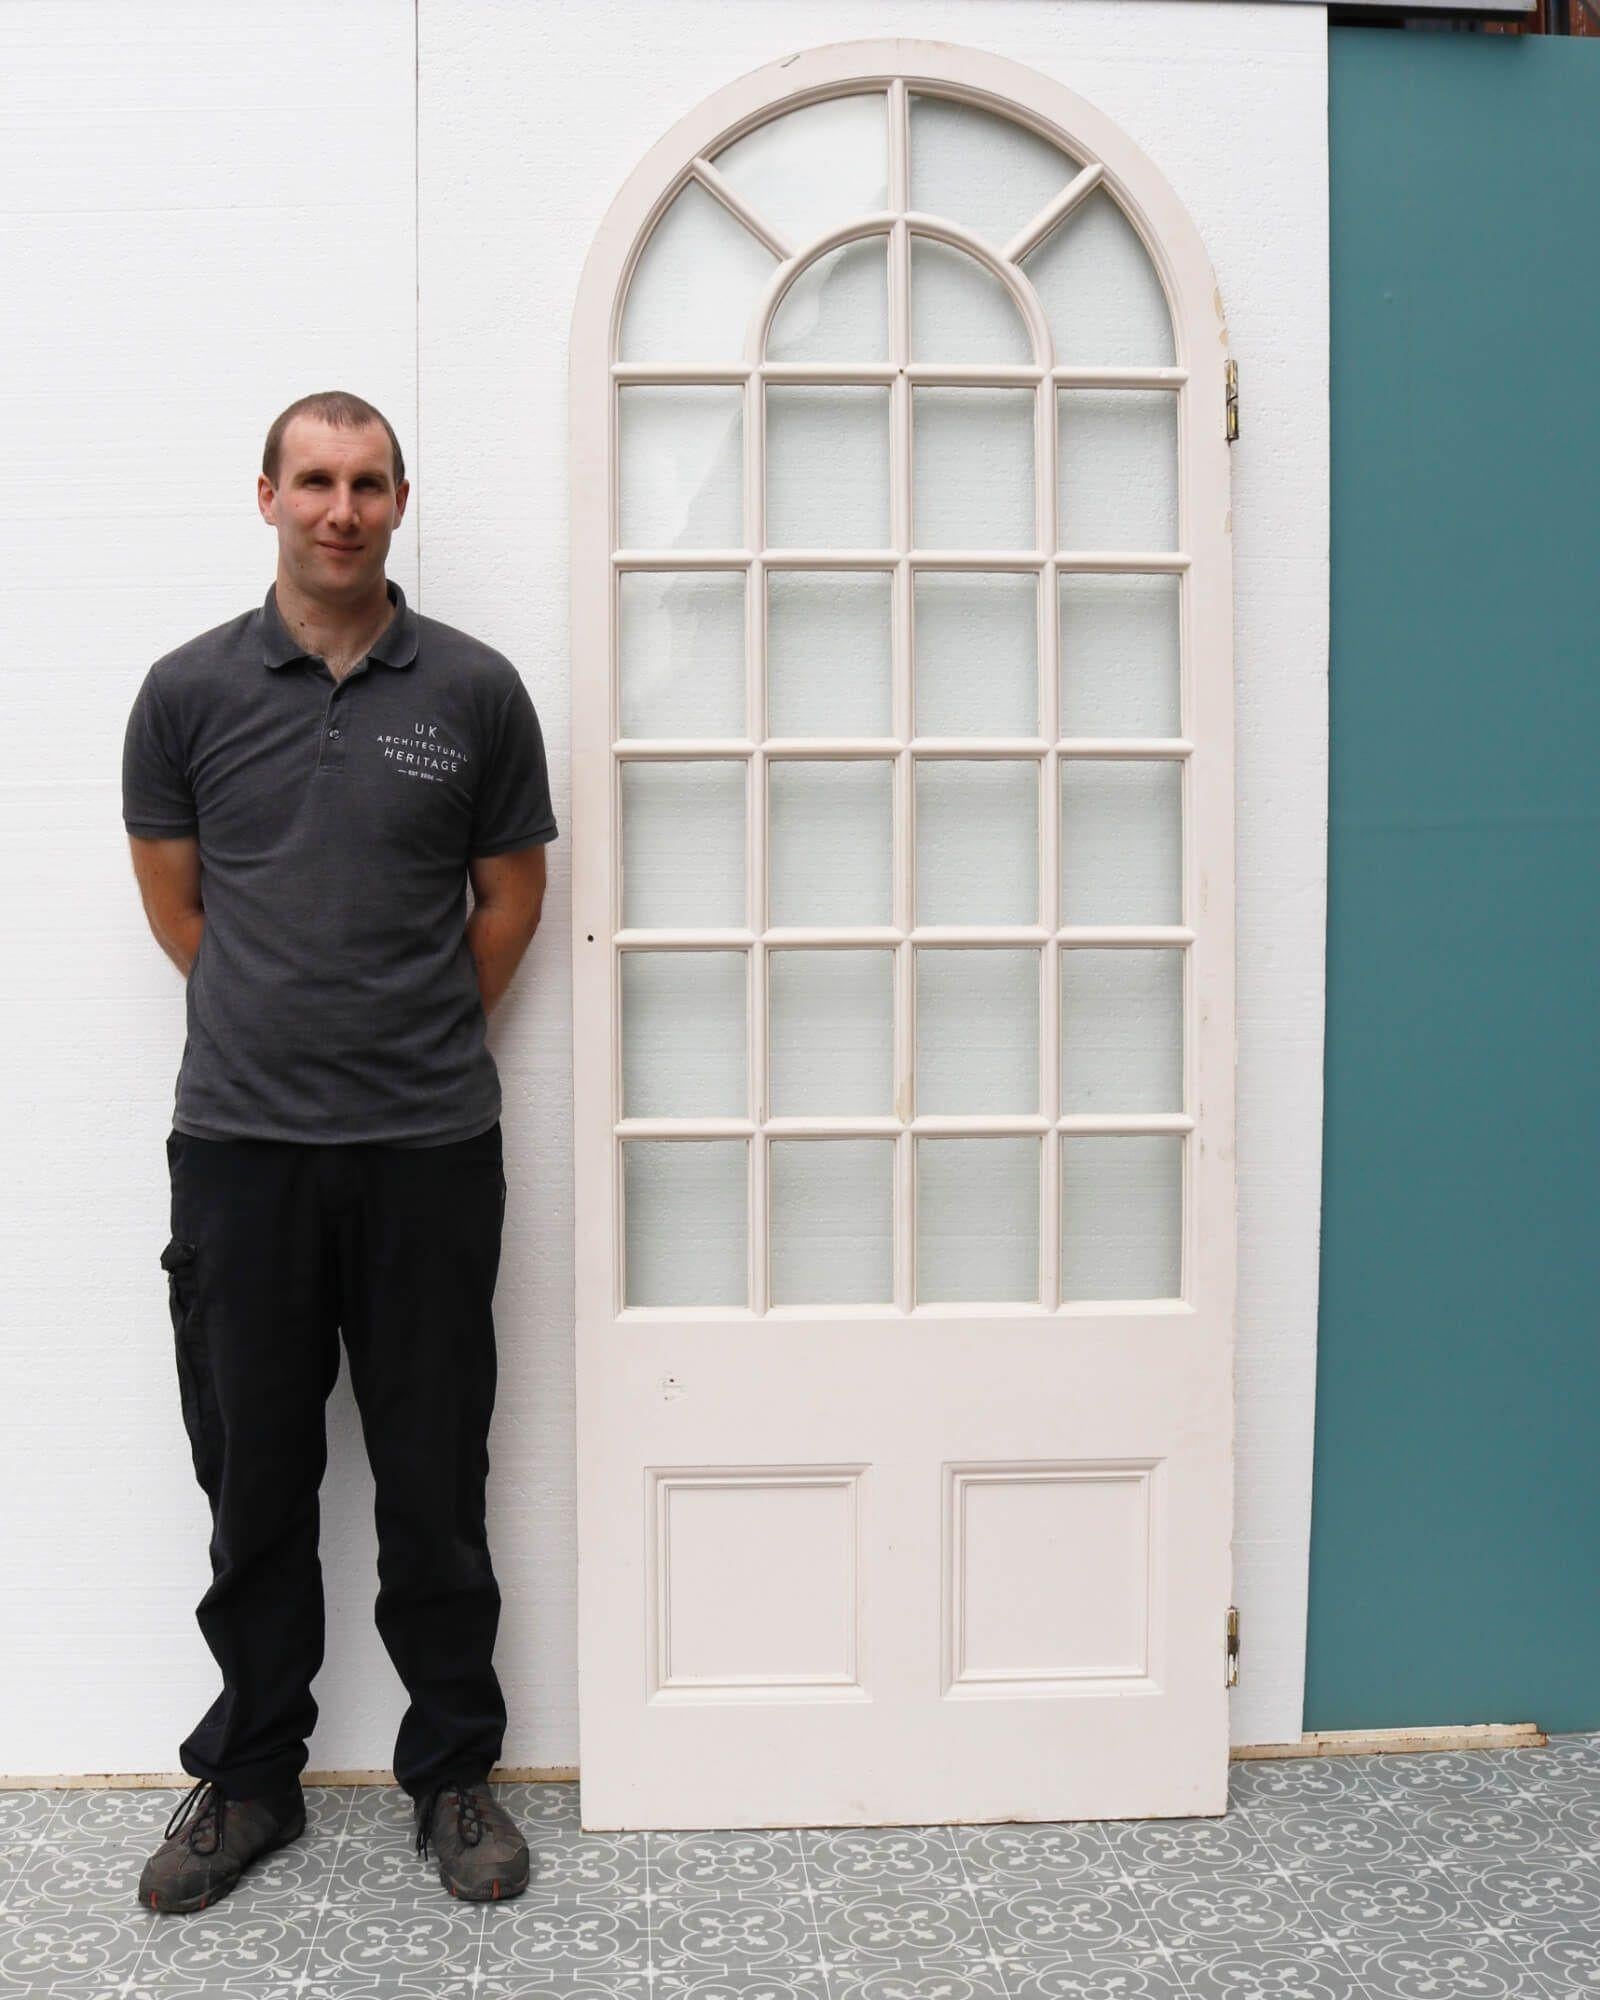 Une ancienne porte victorienne cintrée vitrée blanche convenant à un usage intérieur. Datant d'environ 1870, cette élégante porte provient d'une orangerie victorienne de Tetbury, en Angleterre.

D'une allure gracieuse et élégante, cette porte